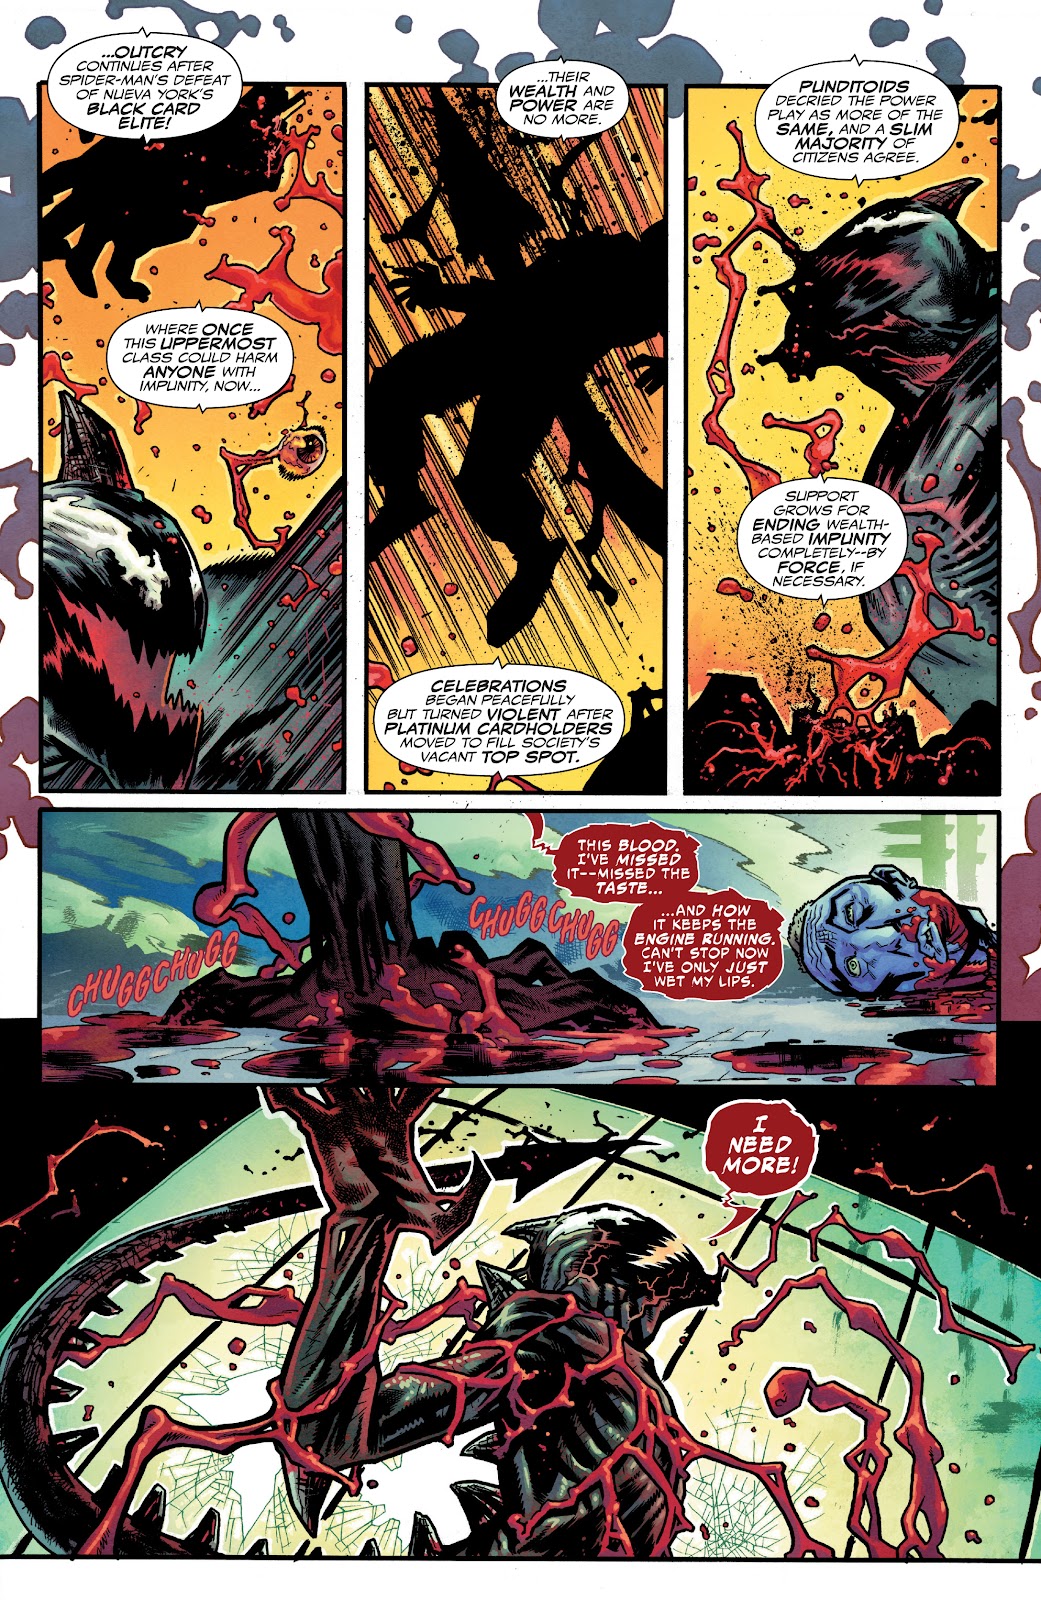 Spider-Man 2099: Dark Genesis issue 1 - Page 5